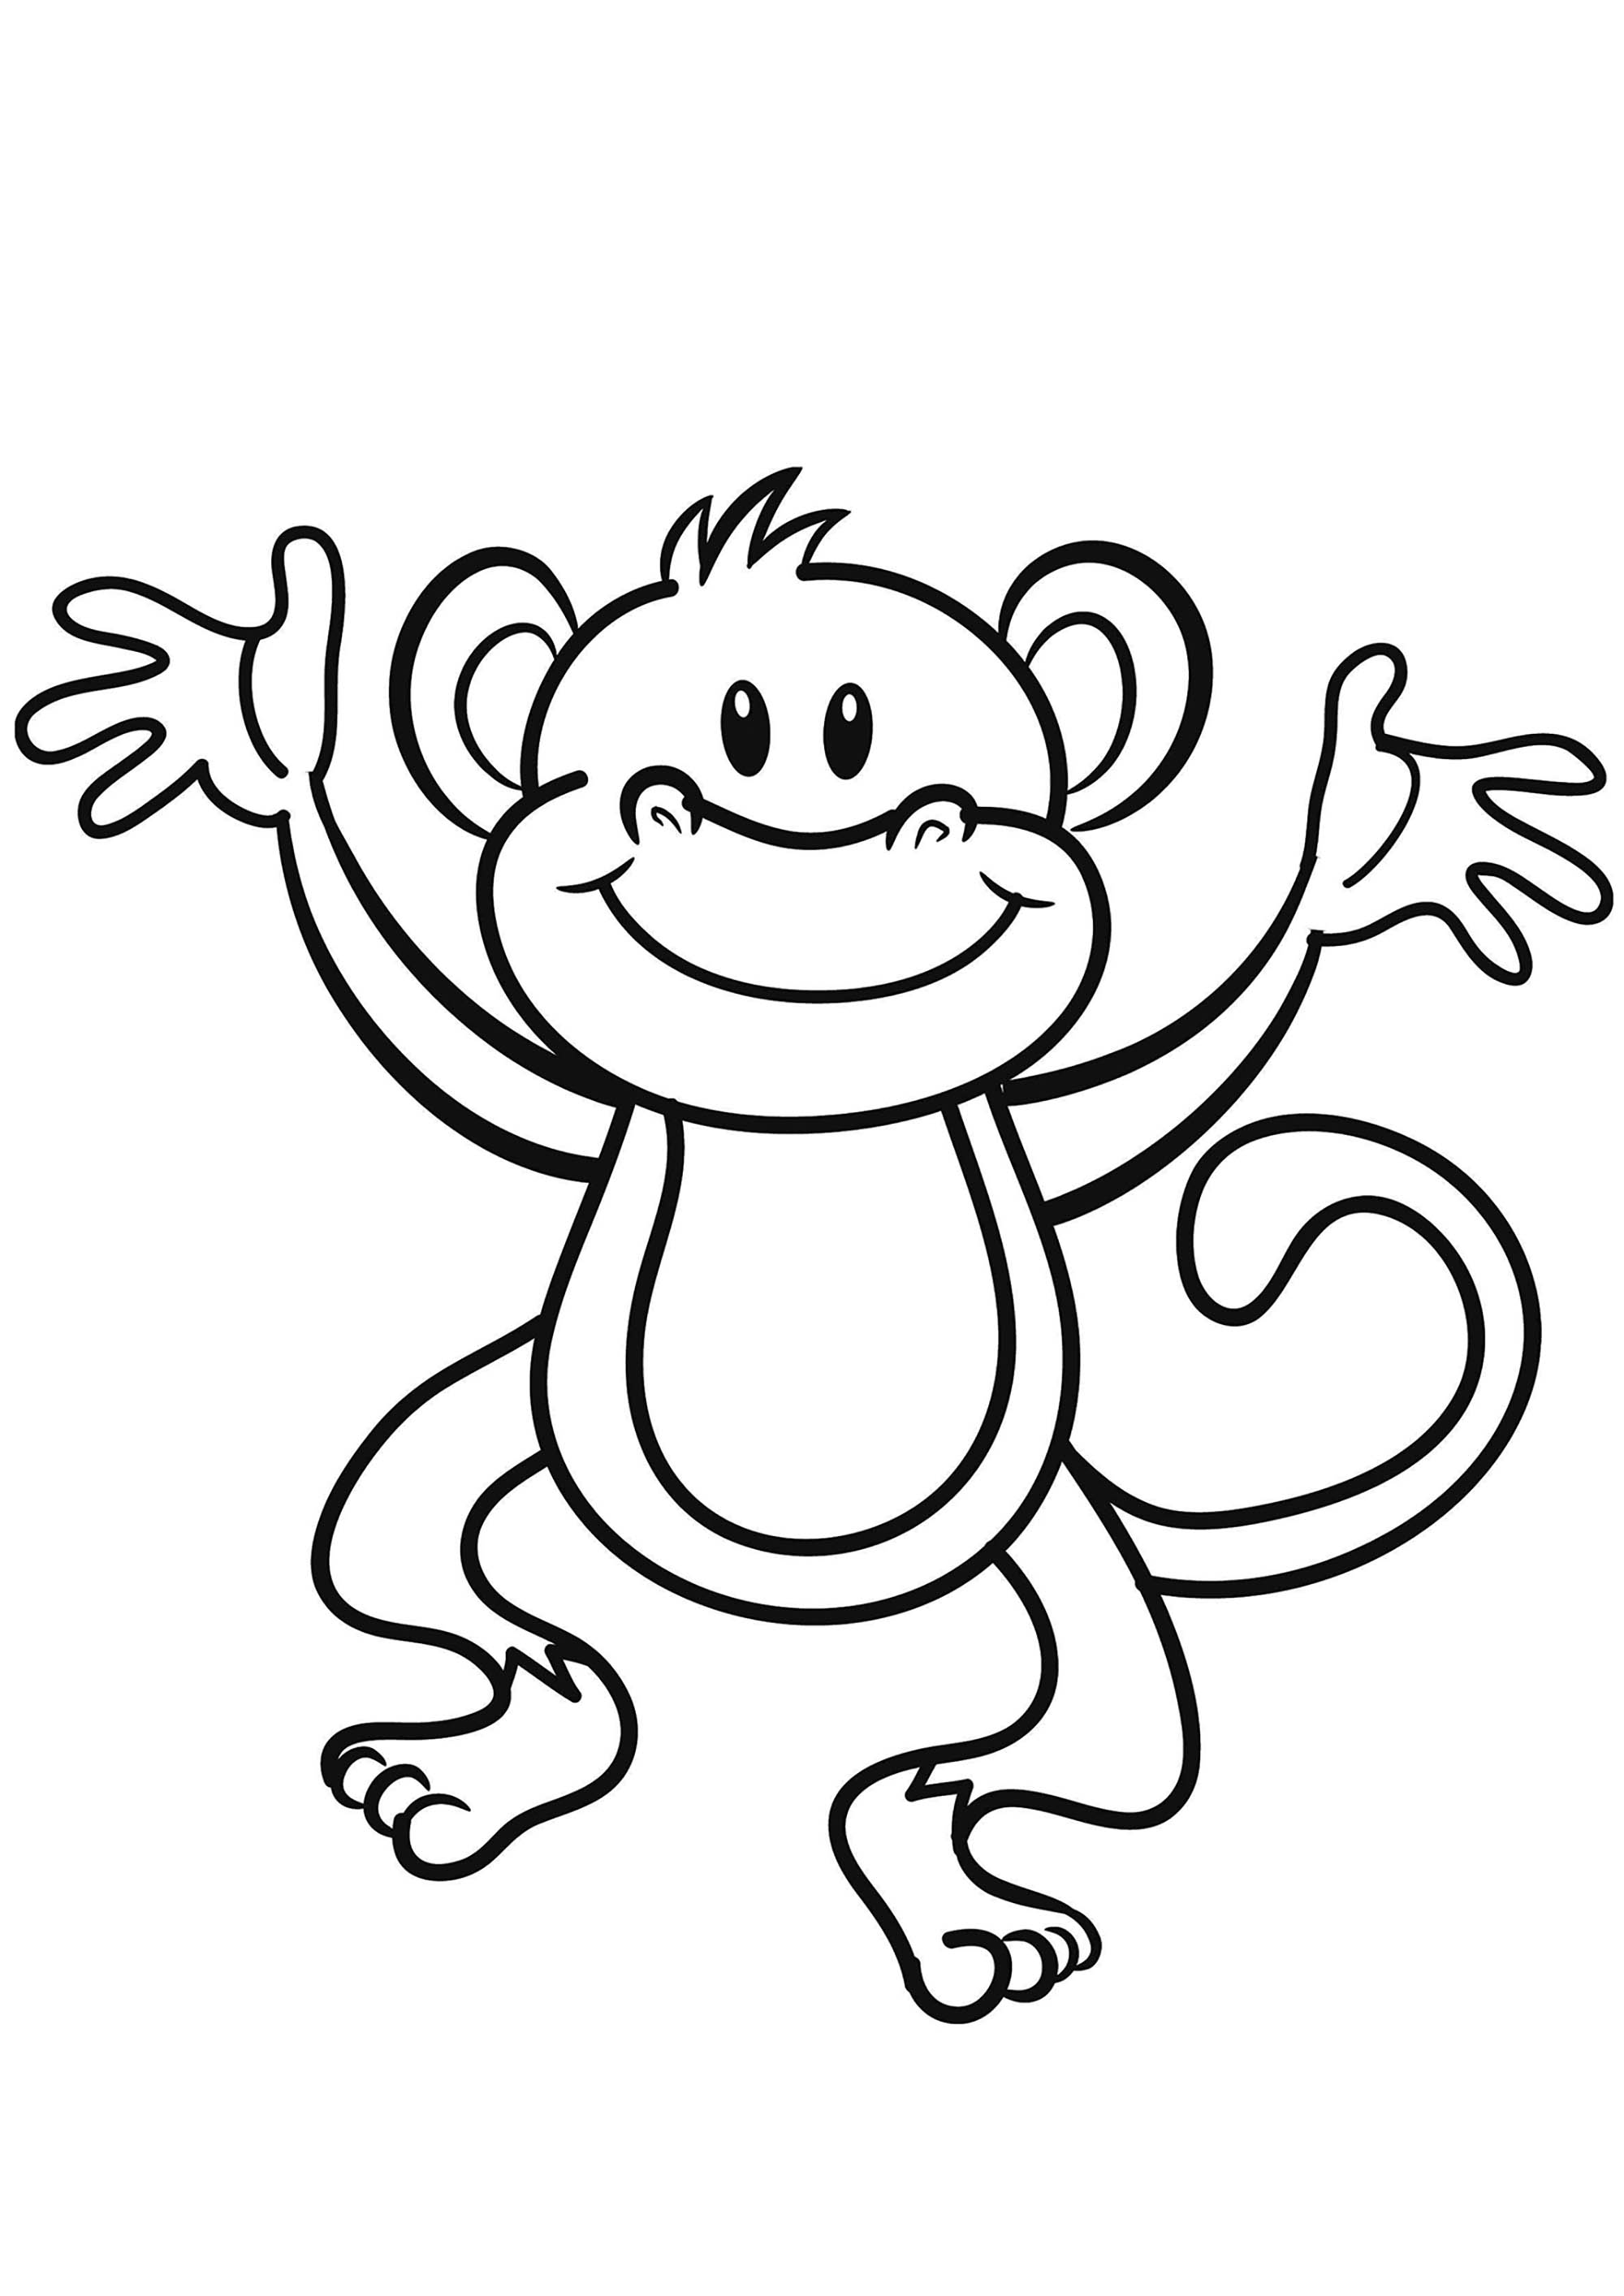 Macaco para colorir para crianças - Macacos - Just Color Crianças